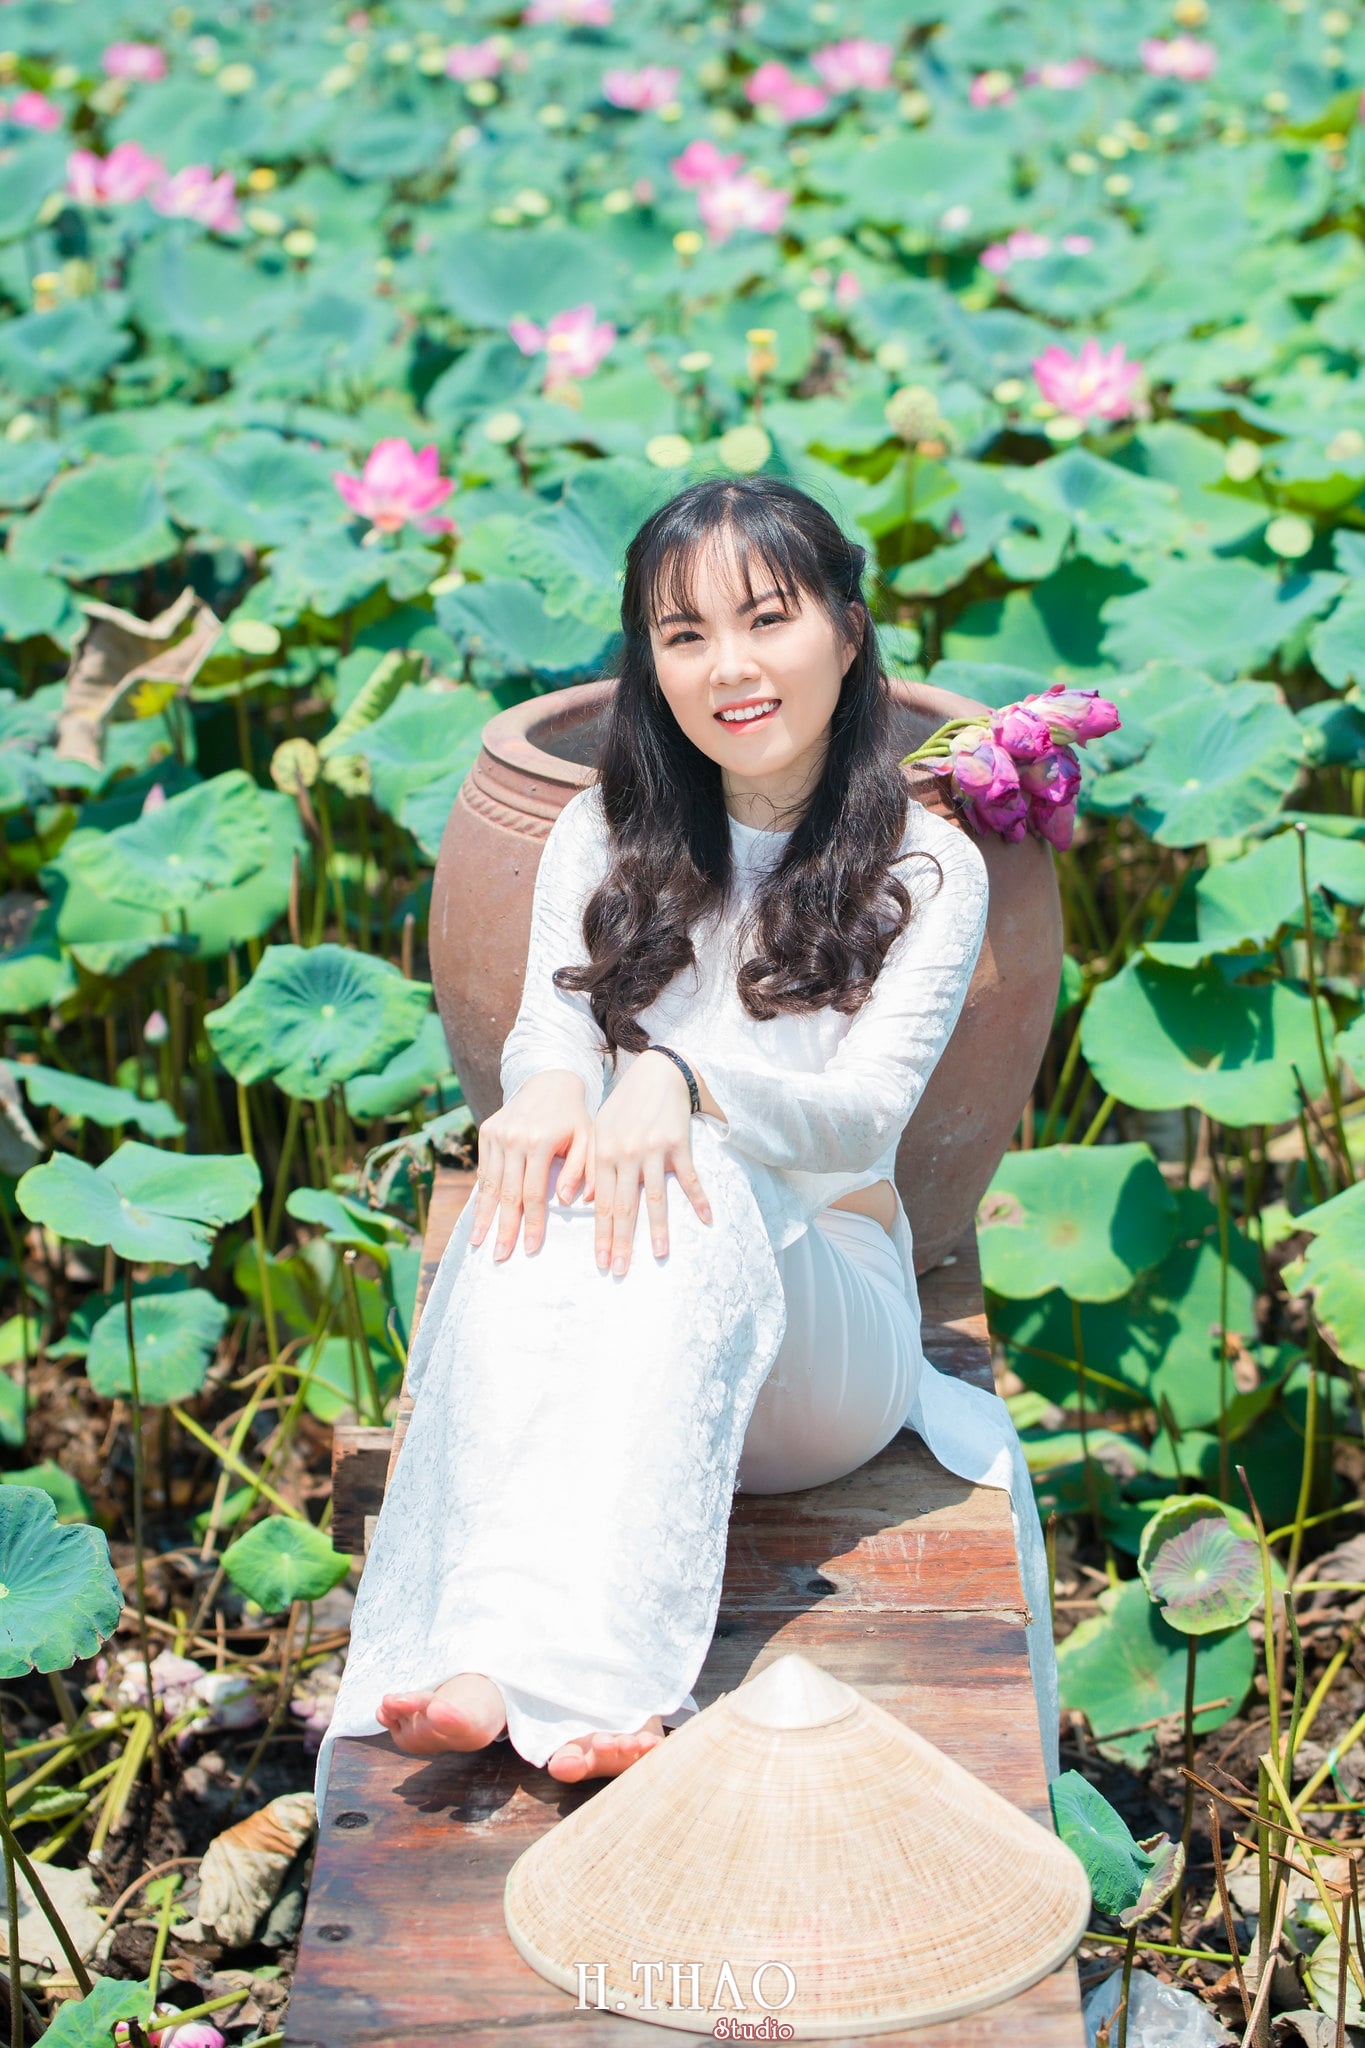 nh áo dài hoa sen 16 - Địa điểm chụp ảnh áo dài đẹp ở Thành phố Hồ Chí Minh